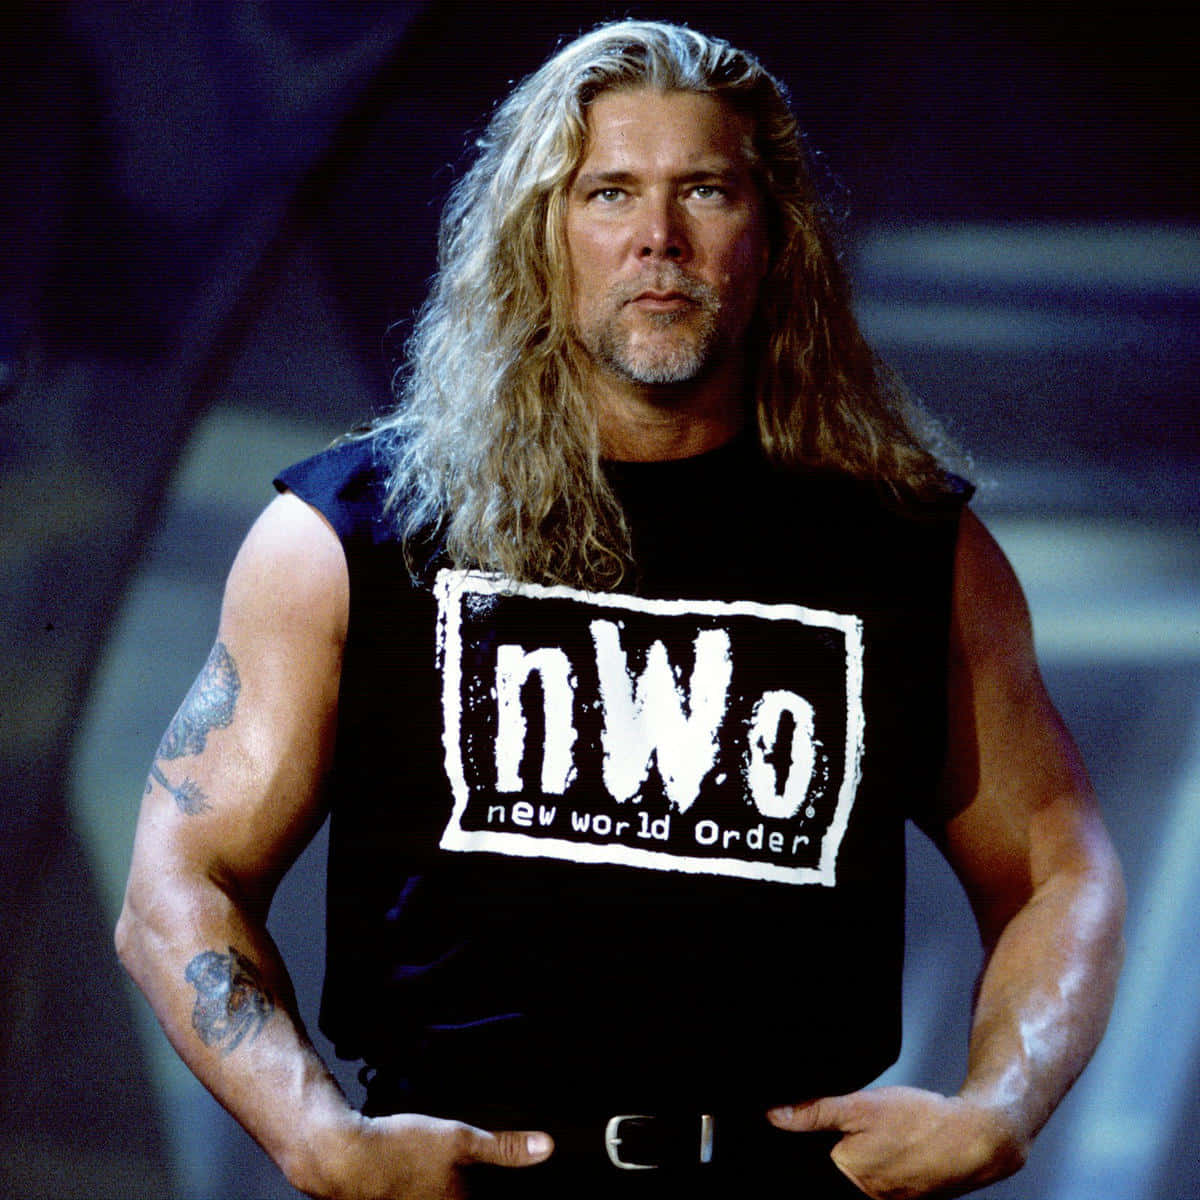 Legendary Wrestler Kevin Nash in Iconic New World Order T-shirt Wallpaper